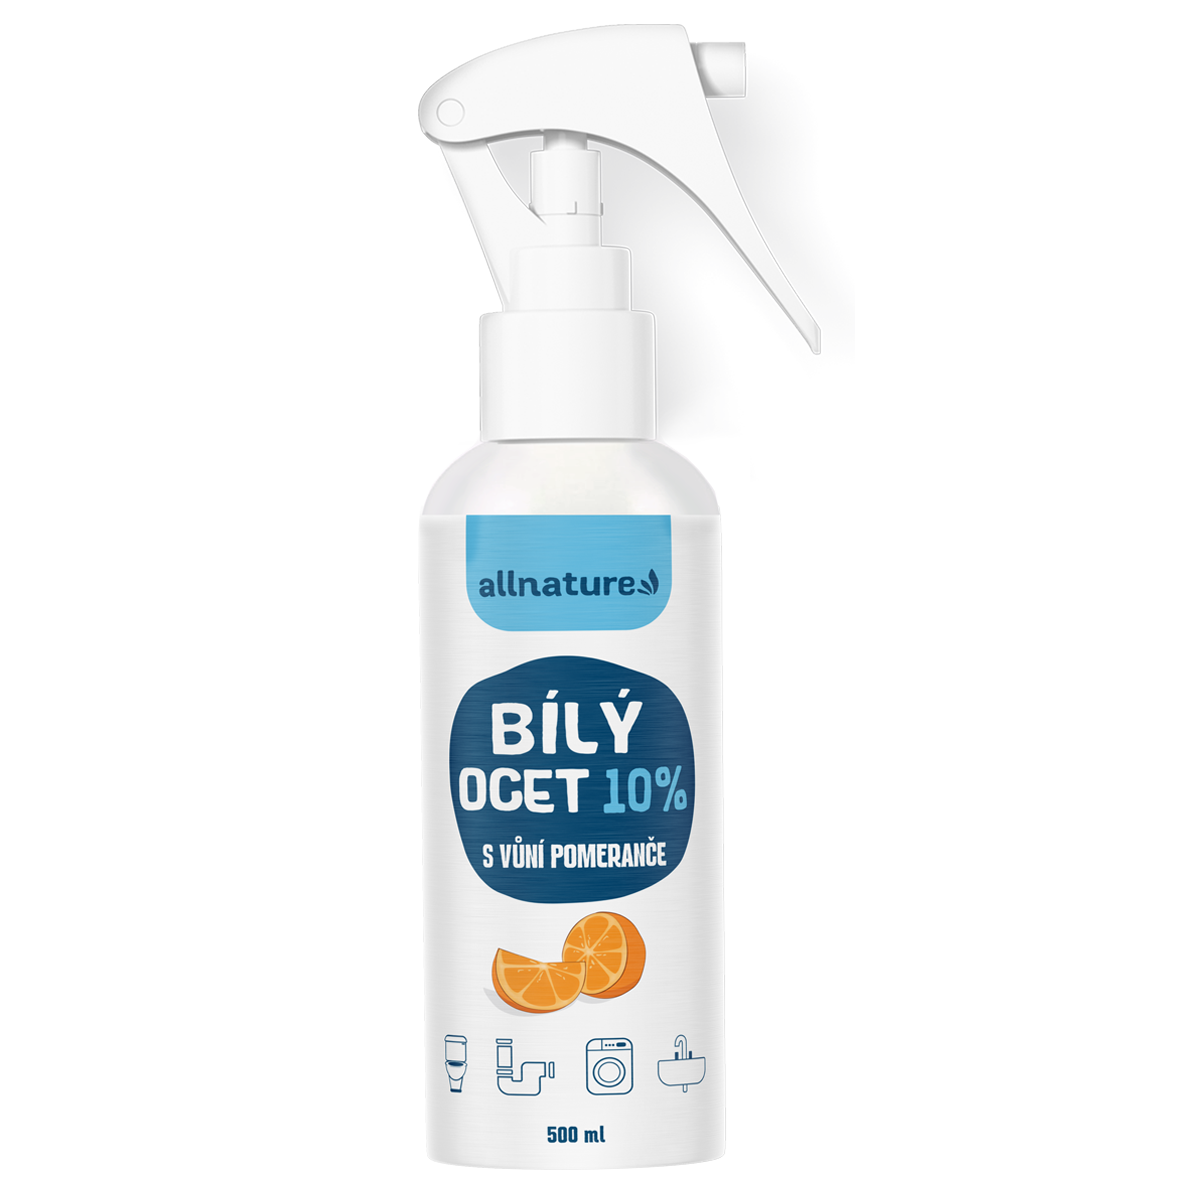 Allnature Bílý ocet sprej 10% s vůní pomeranče (500 ml) - II. jakost - univerzální přírodní čistič